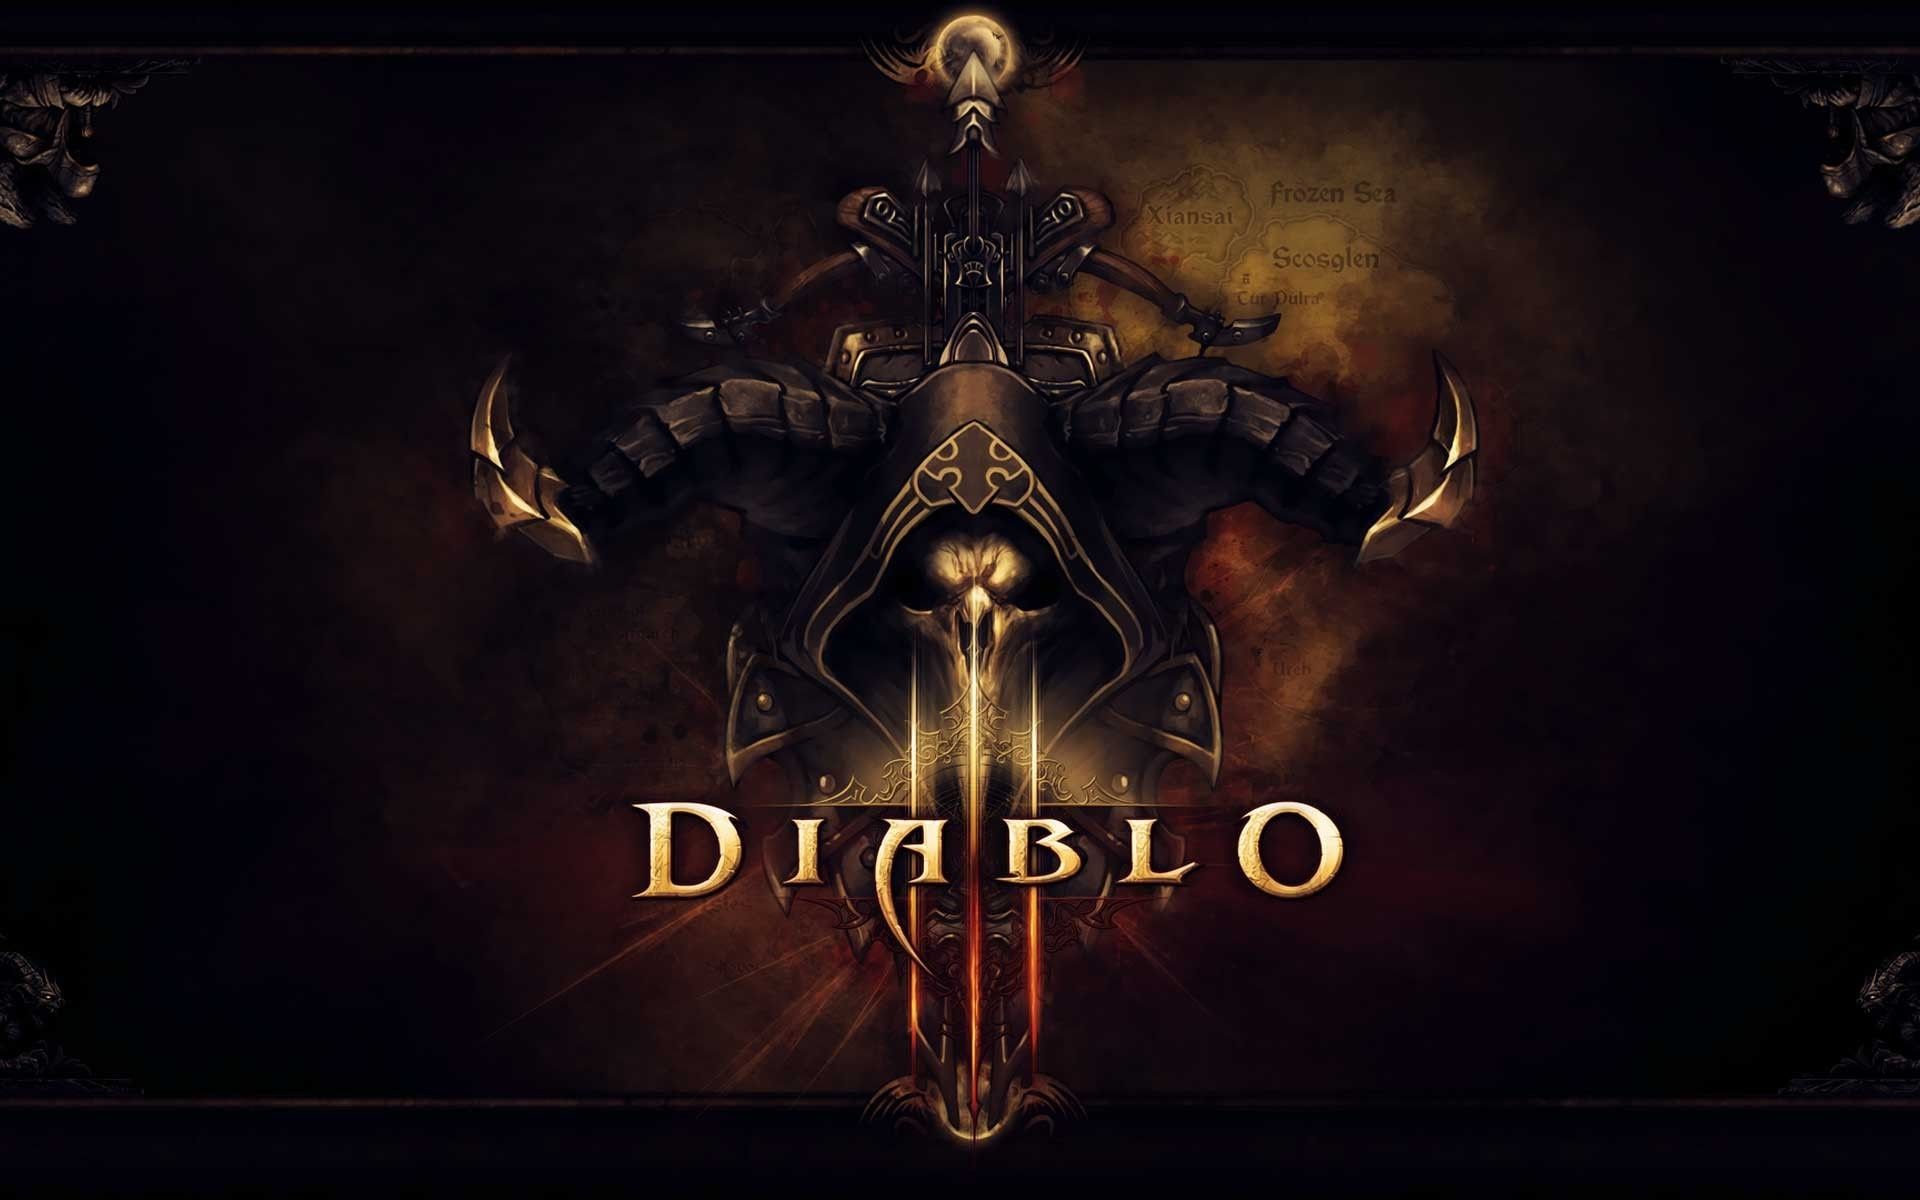  Diablo 3 1920x1080 Hintergrundbild 1920x1200. Laden Sie Das Diablo Hintergrundbild Für Ihr Handy In Hochwertigen, Hintergrundbildern Diablo Kostenlos Herunter